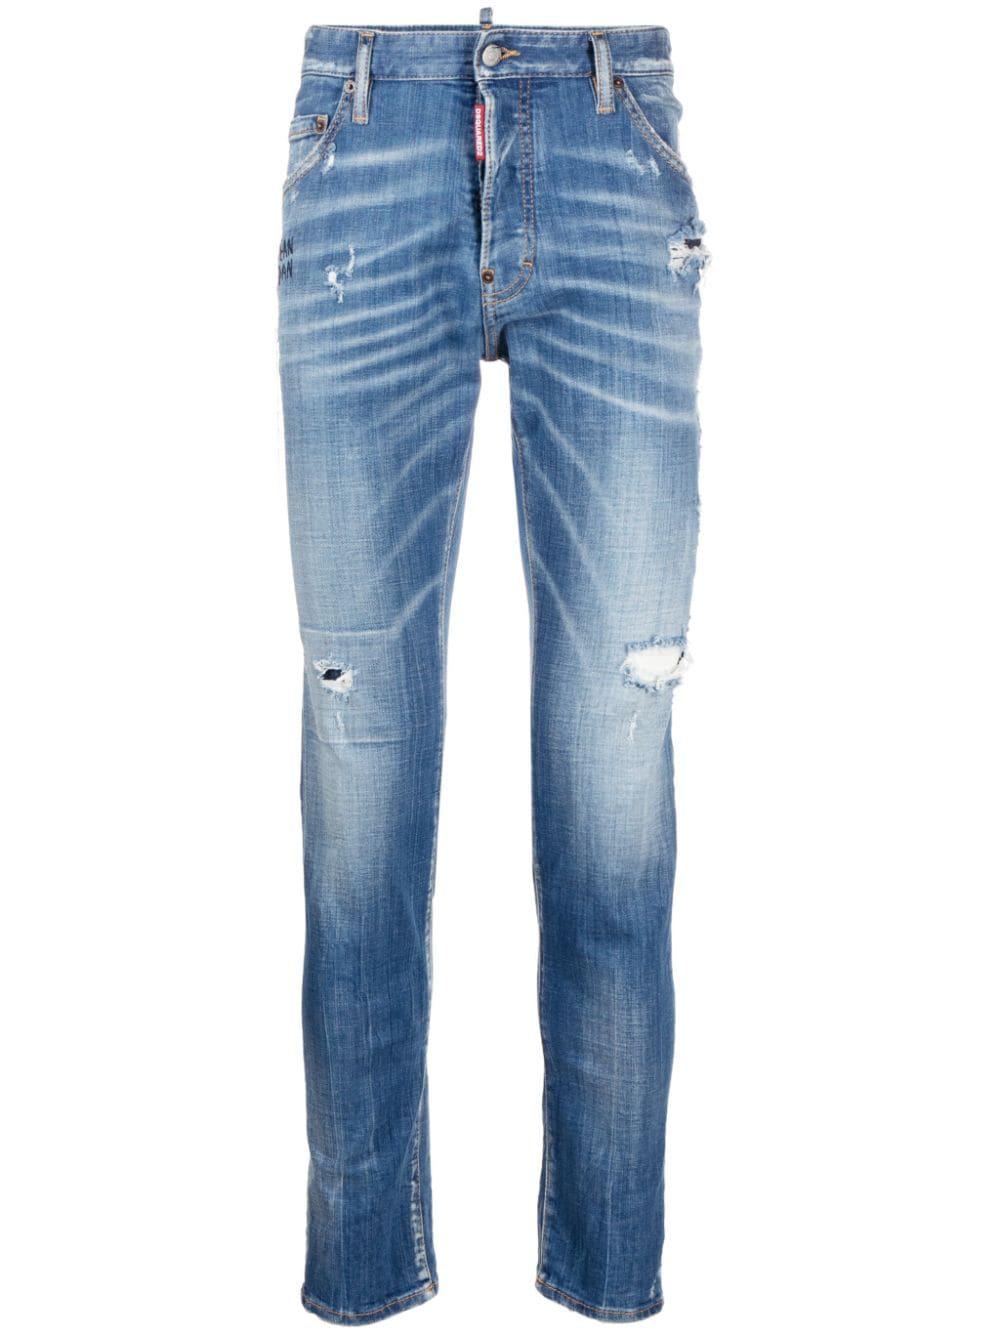 Quần Jeans Navy Blue 5 túi thiết kế cho nam